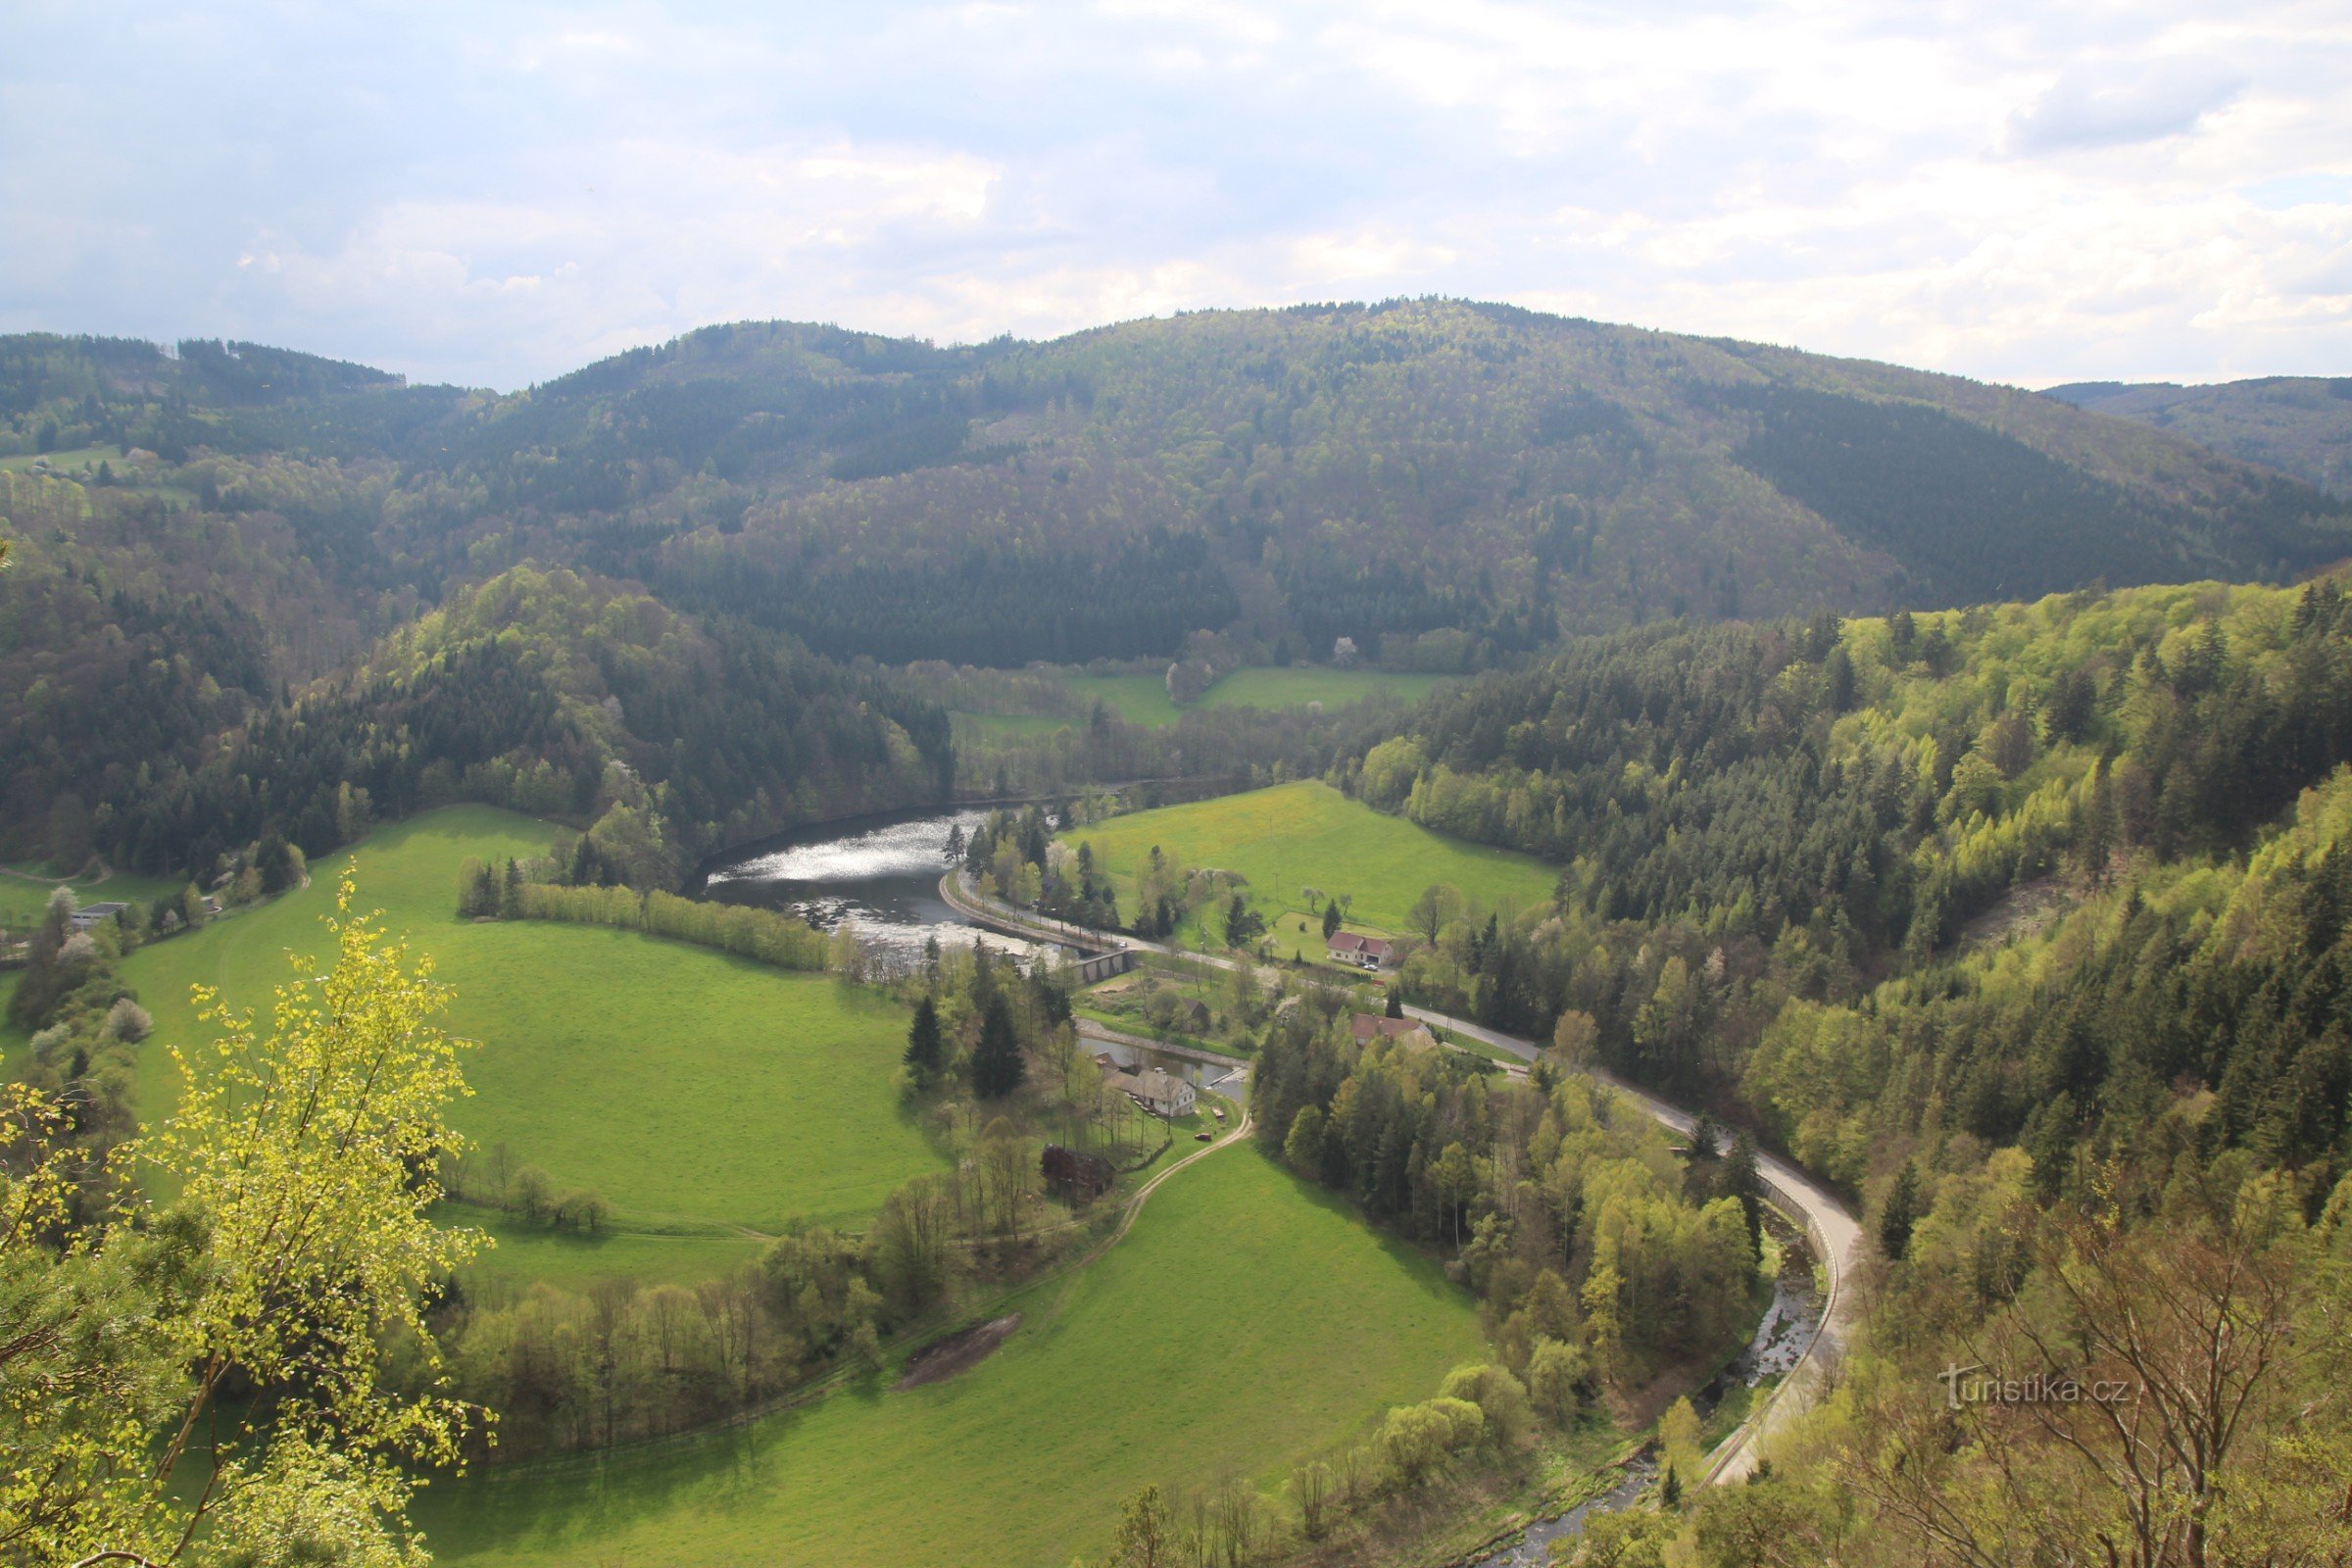 Widok na dno doliny ze zbiornikiem wodnym Vír II, nad nim wydatny grzbiet Bajerskiego wzgórza